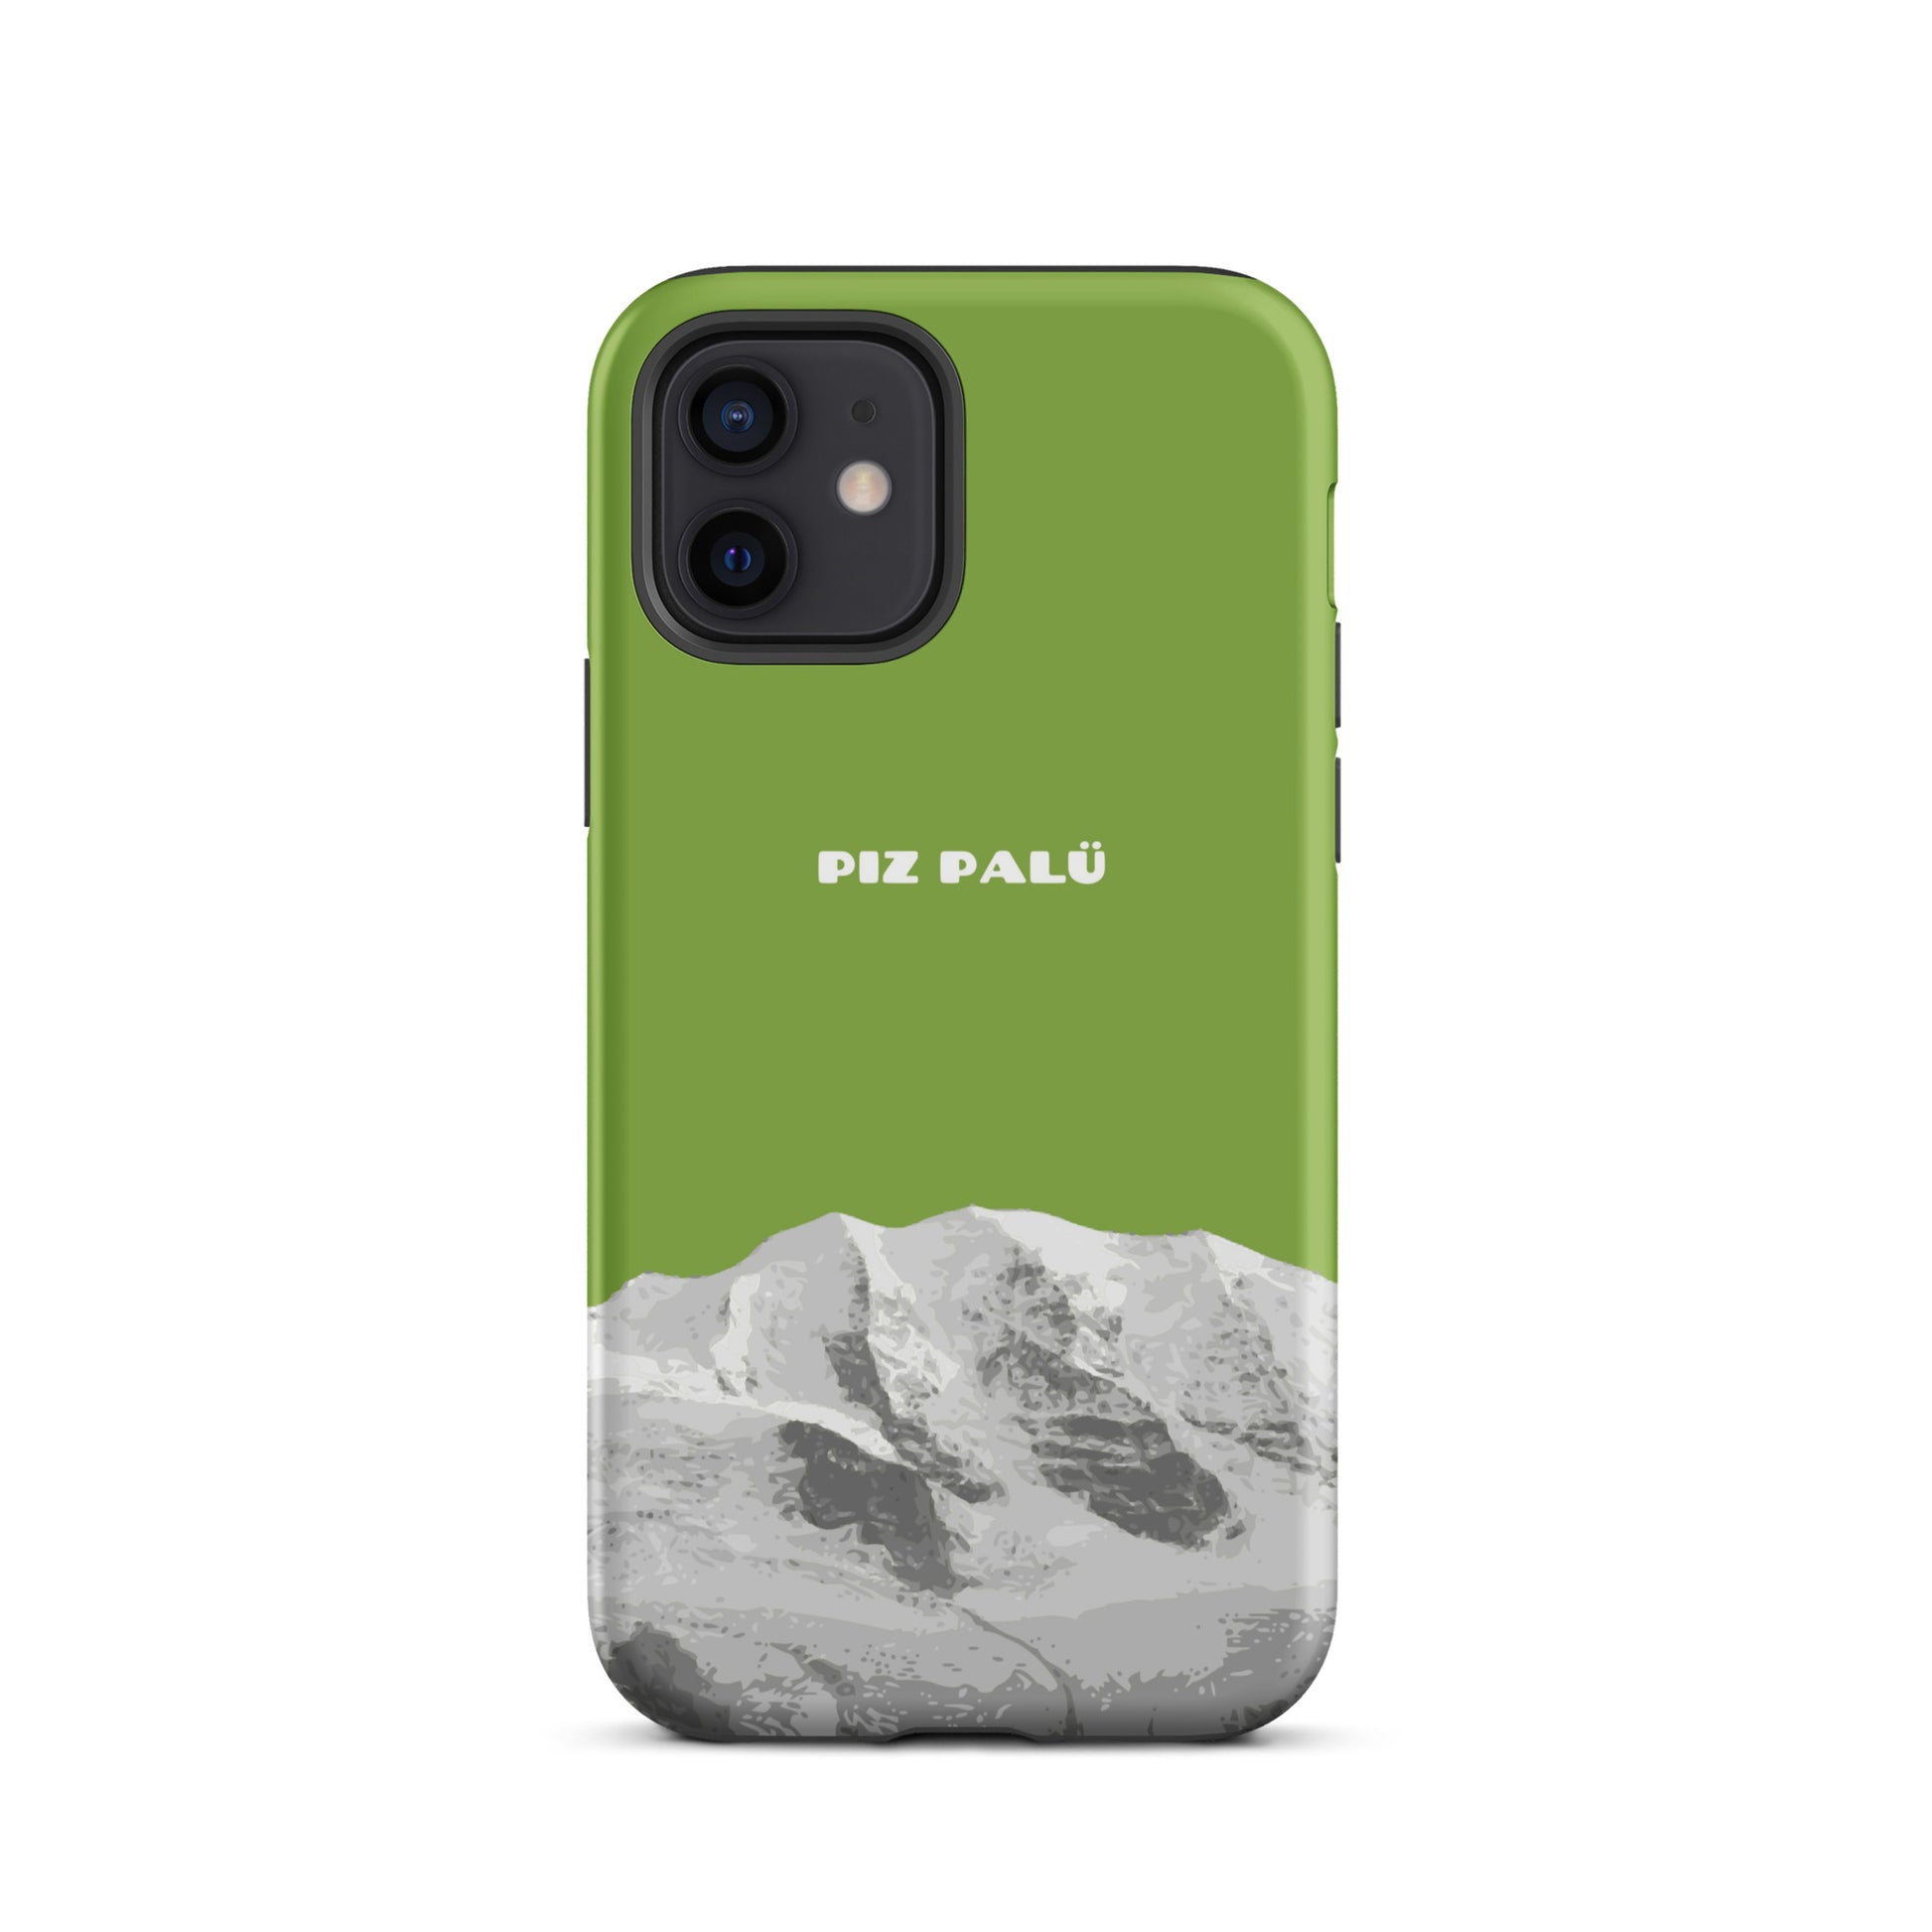 Hülle für das iPhone 12 von Apple in der Farbe Gelbgrün, dass den Piz Palü in Graubünden zeigt. 